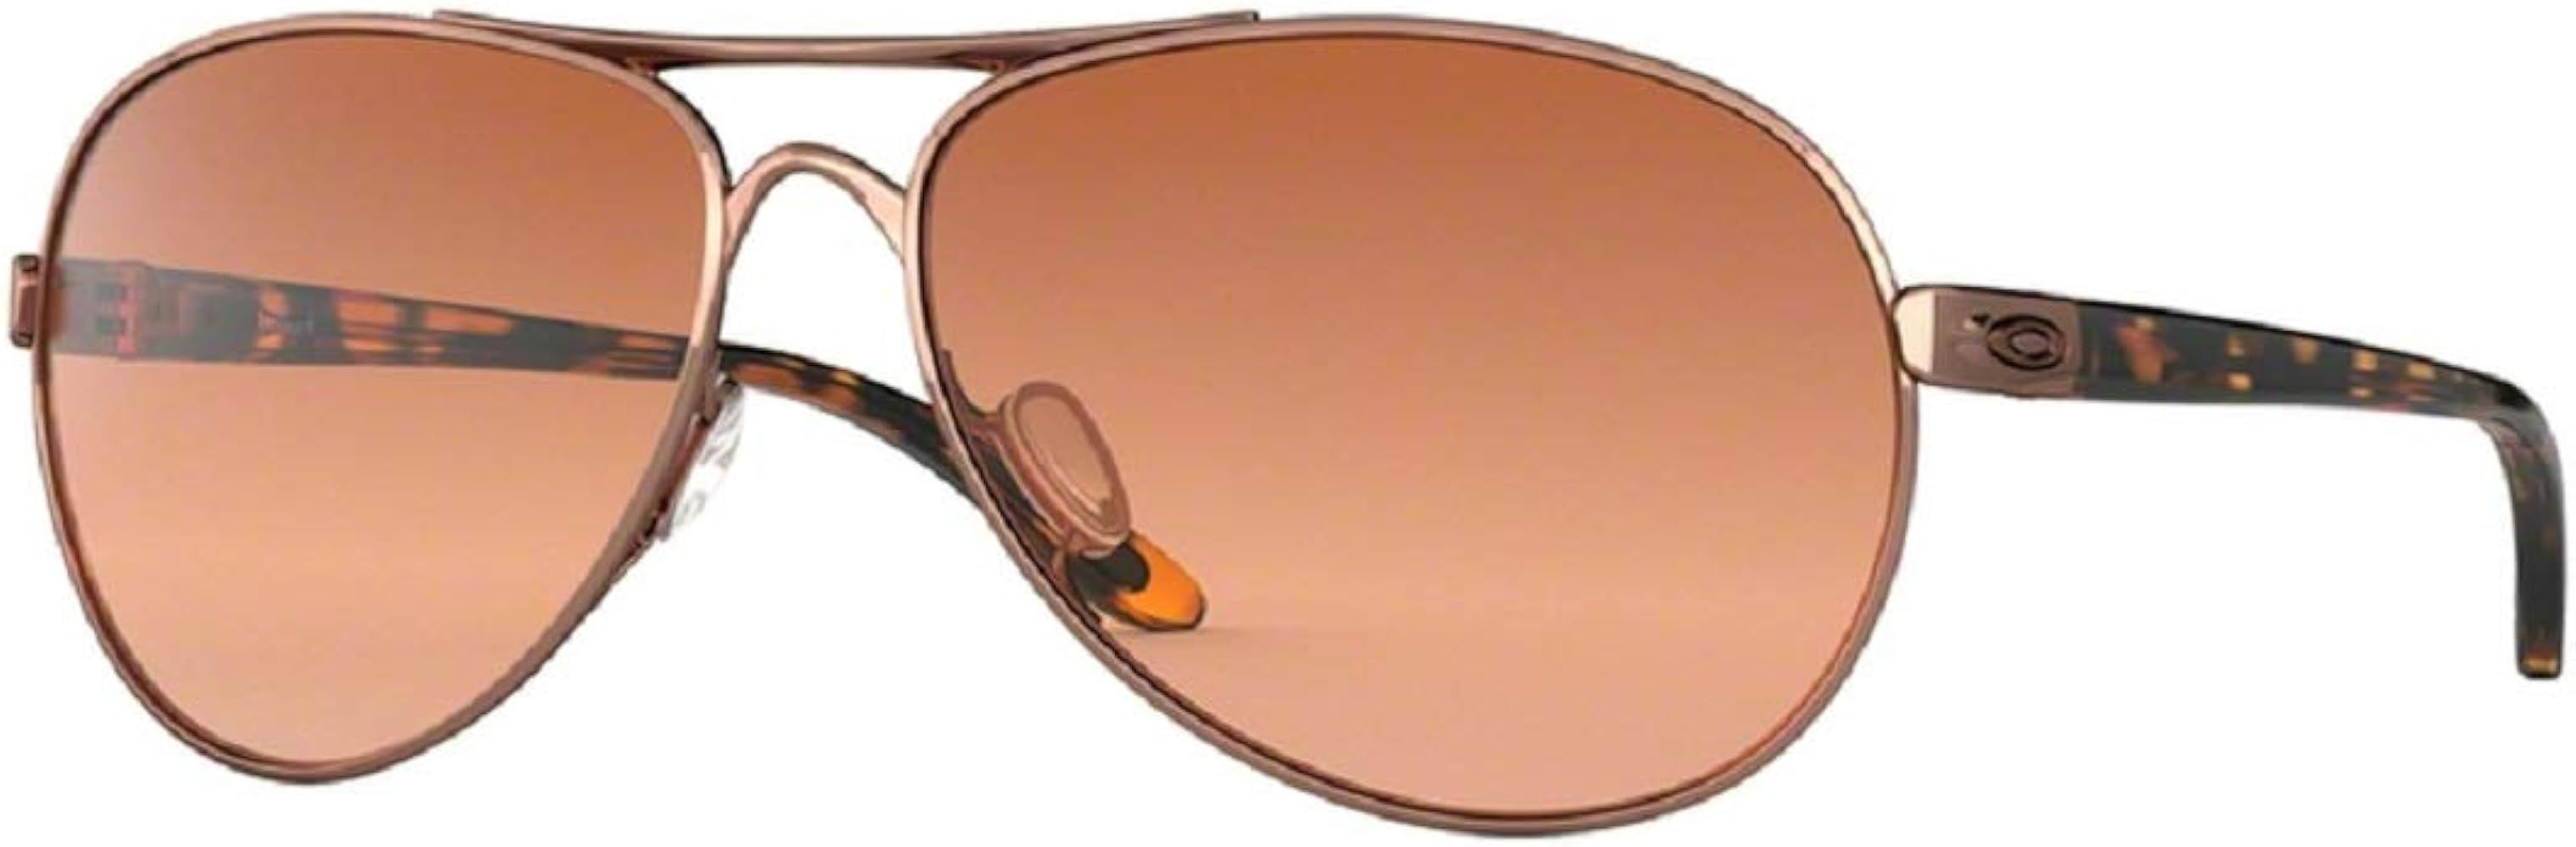 Oakley Feedback OO4079 Sunglasses For Men For Women+BUNDLE with Oakley Accessory Leash Kit | Amazon (US)